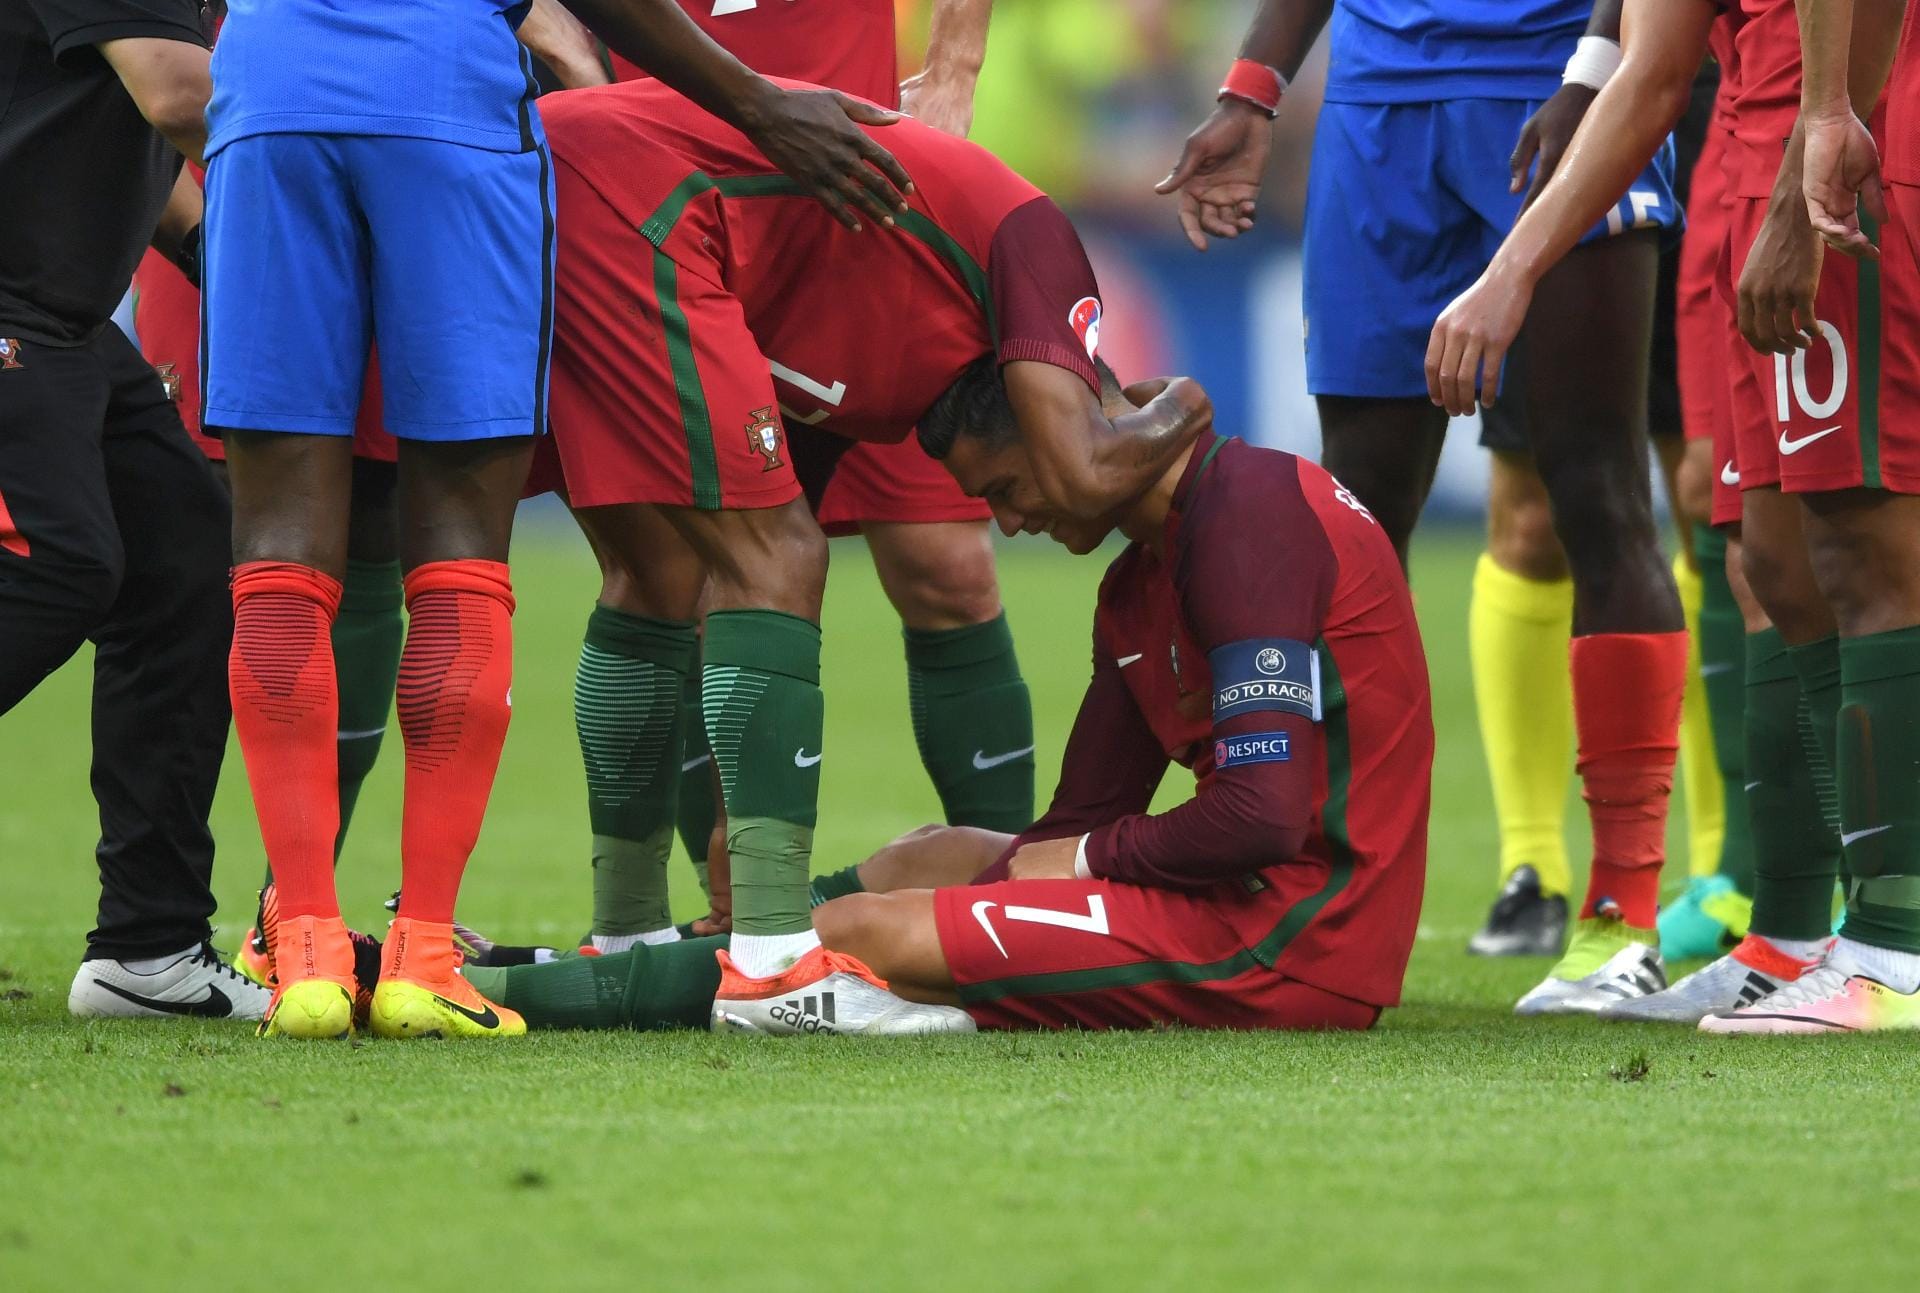 Die Partie hat nach der Abtastphase kaum richtig begonnen, erlebt Portugal einen extrem herben Dämpfer: Dimitri Payet haut Ronaldo von den Socken, der Weltfußballer von 2013 und 2014 bleibt verletzt liegen.